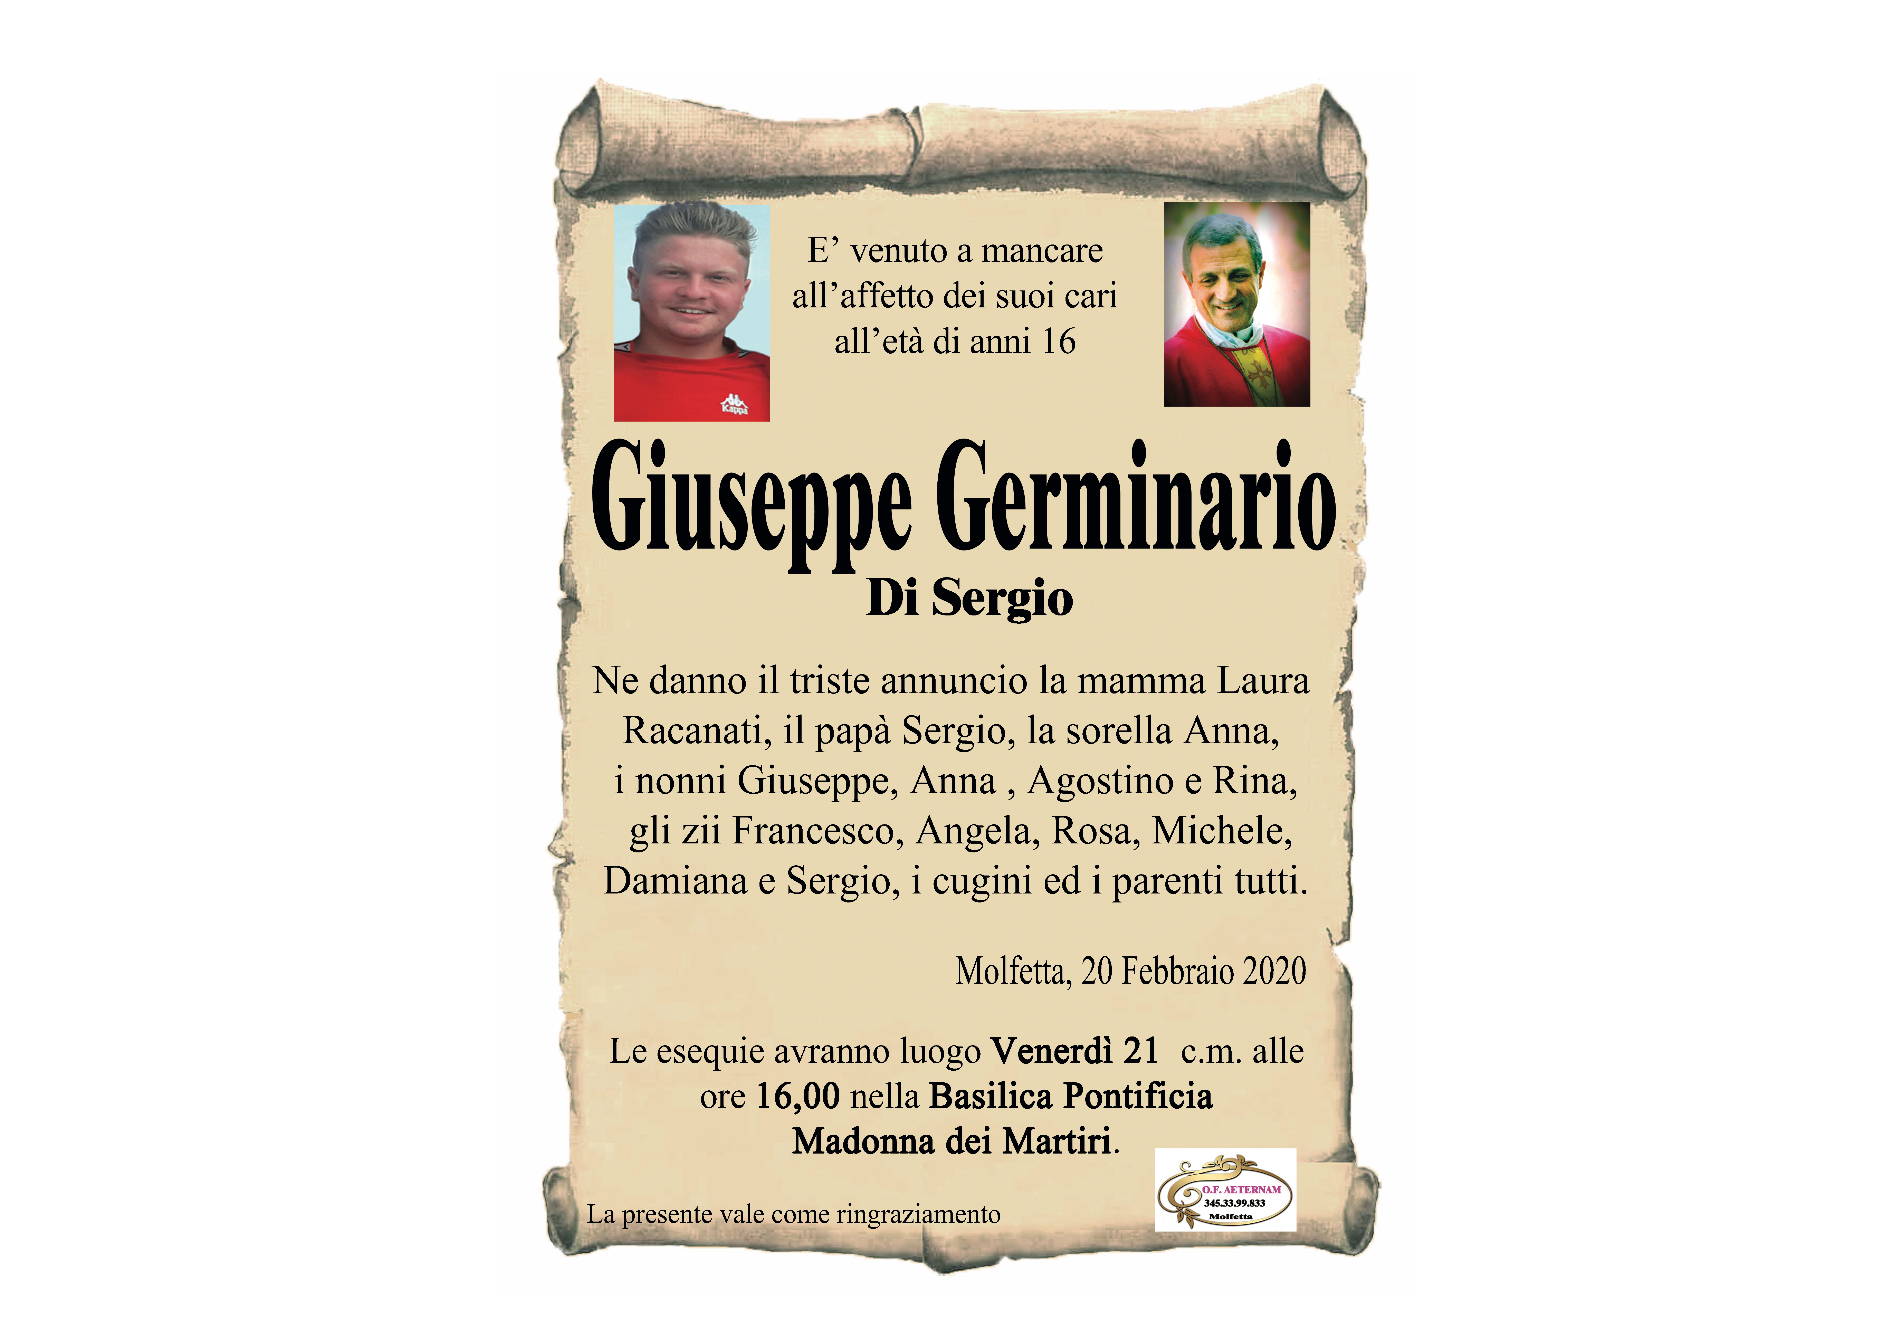 Giuseppe Germinario